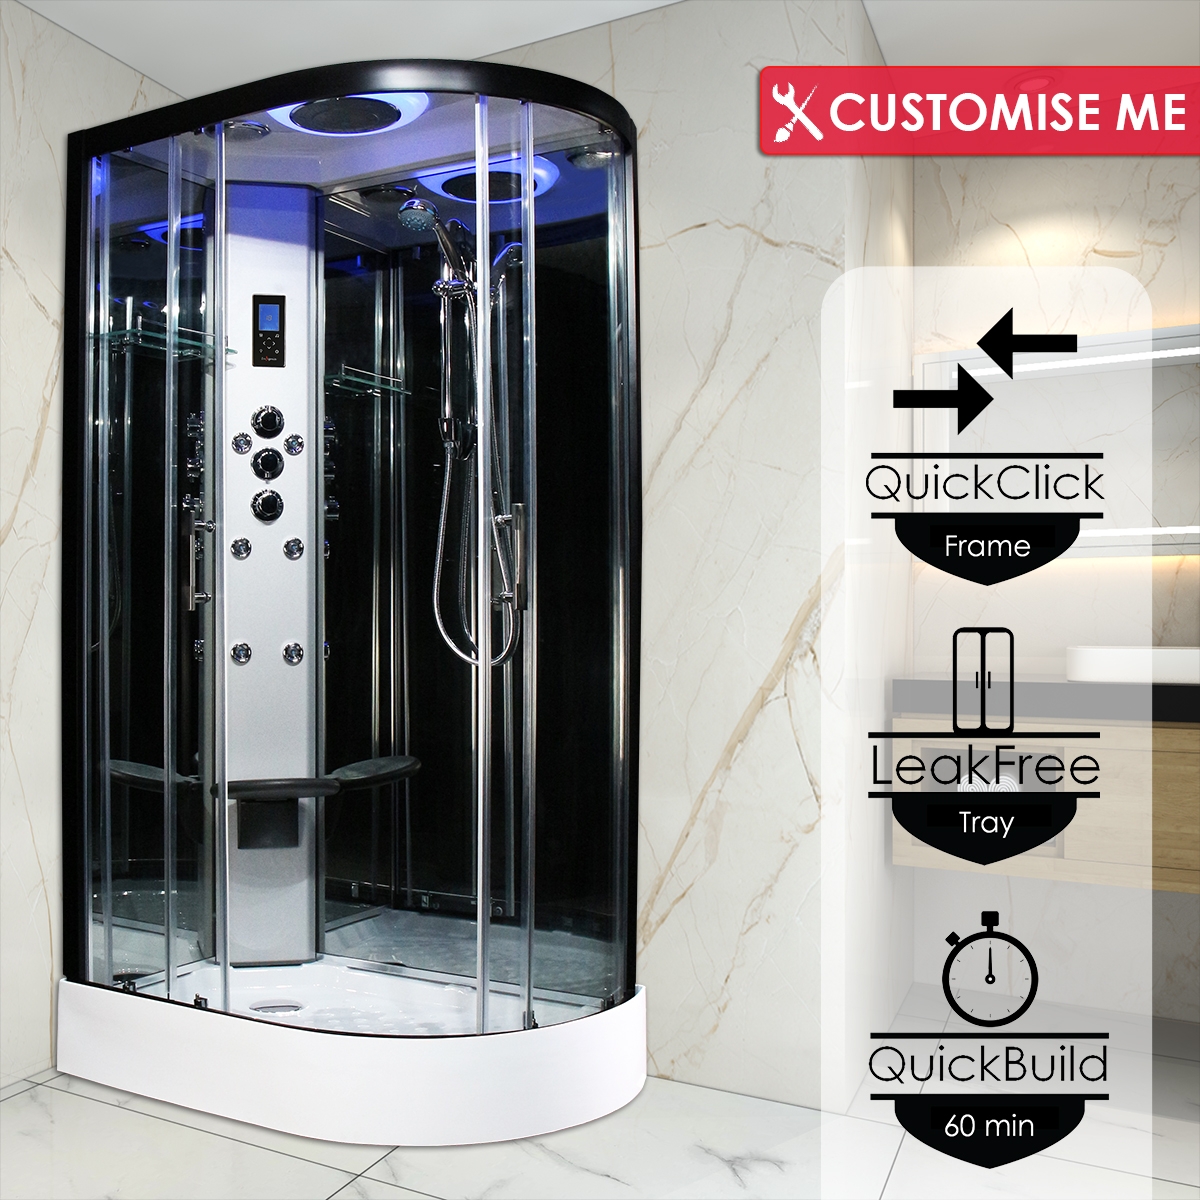 Cómo instalar una cabina de ducha con hidromasaje 